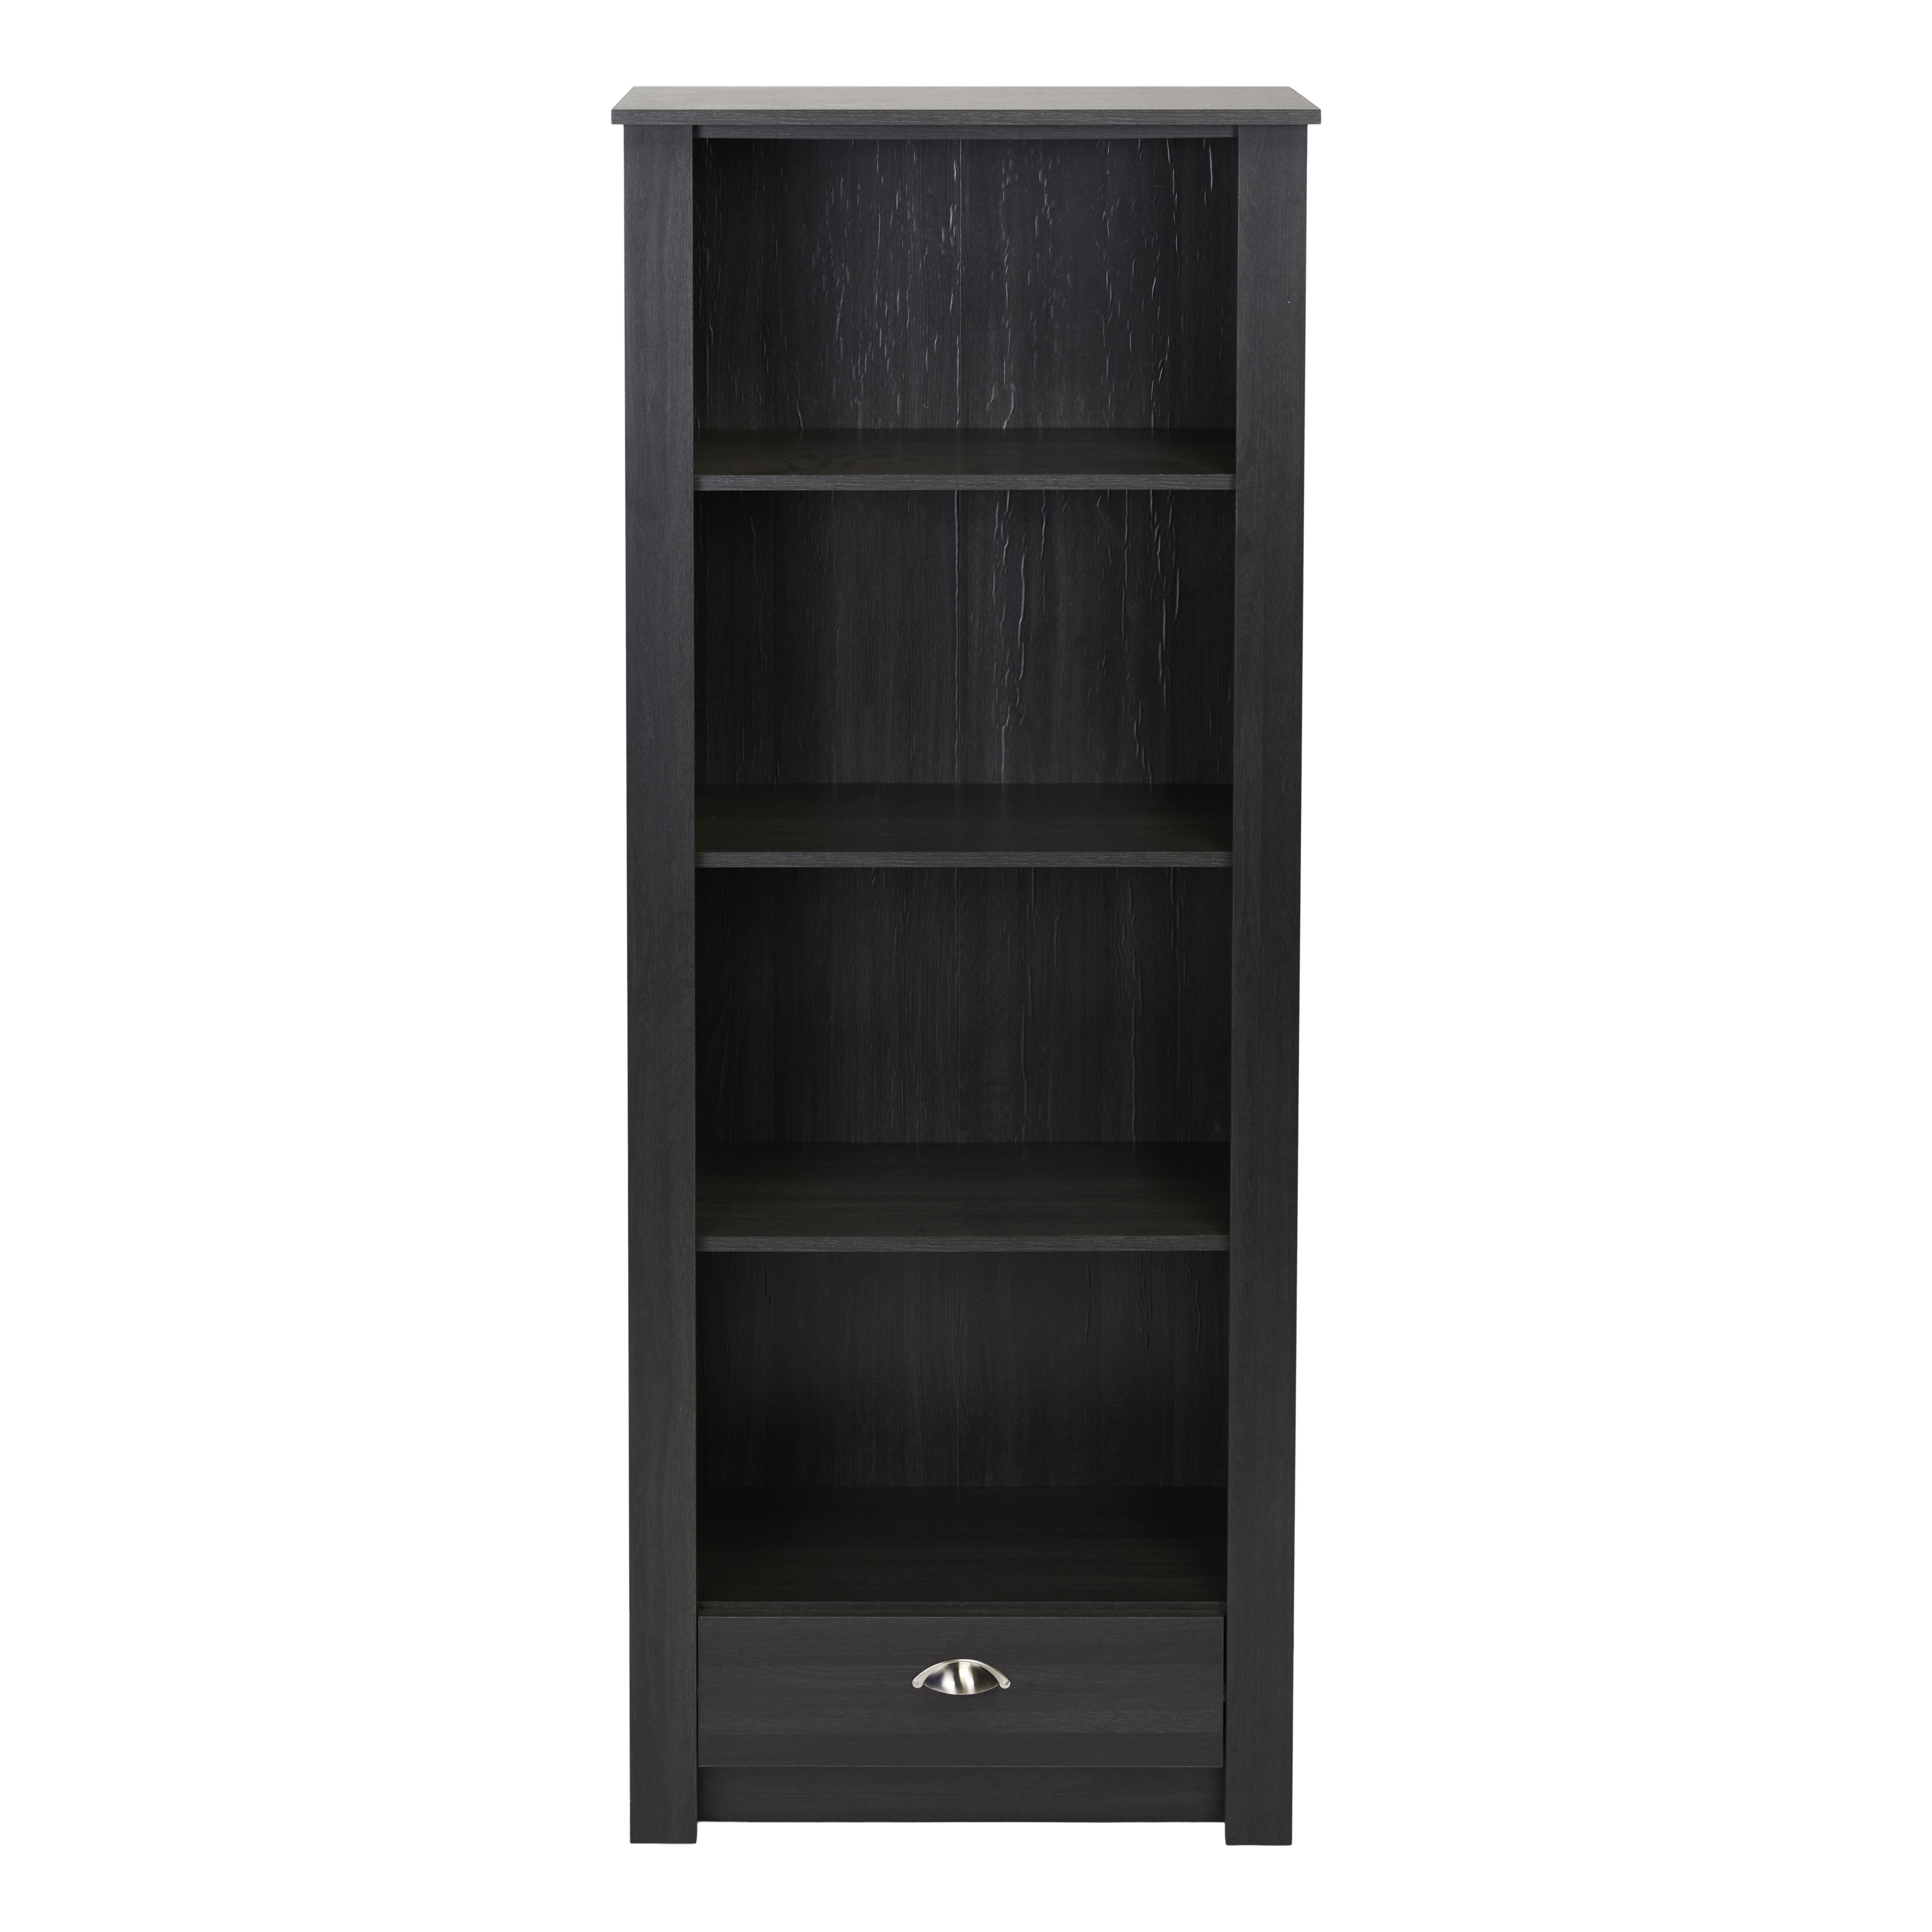 Porthchapel Matt black 1 compartment 4 Shelf Freestanding Rectangular Bookcase (H)1823mm (W)718mm (D)328mm